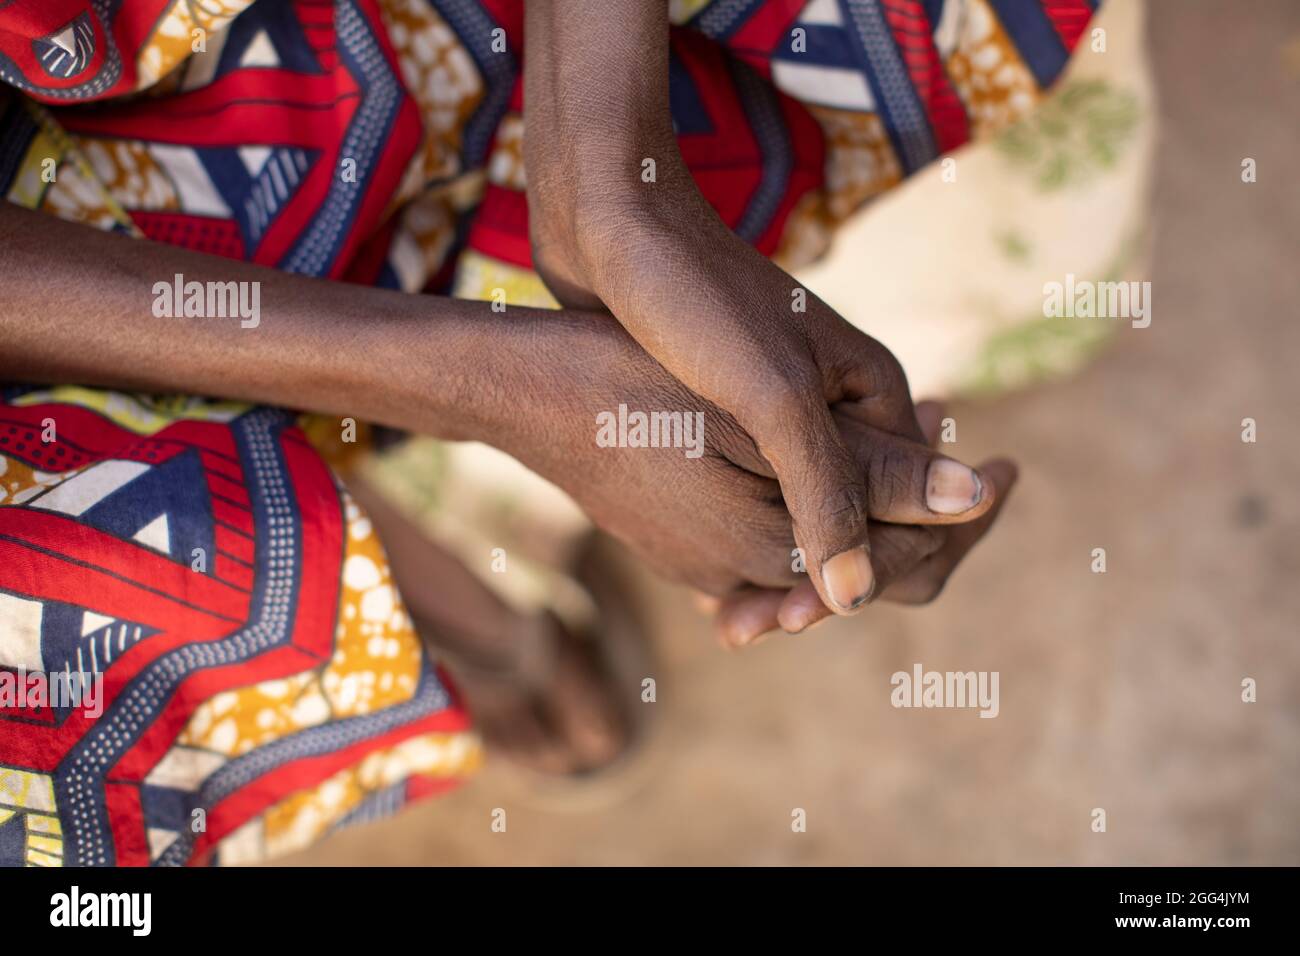 Aichata Sidibe (età sconosciuta) è la madre di tre figli, che si aspetta un quarto. Vivono in una piccola capanna singola nel villaggio di Siemana, Mali, mentre suo marito ha lasciato la zona per trovare lavoro. Trovare abbastanza cibo per nutrire la famiglia rappresenta una sfida costante, e i bambini sono spesso affamati. “quando i bambini non ricevono cibo si ammalano”, ha detto. “non è per molto tempo, ma devo poi affidarmi a Dio”. Crisi Sahel 2021; Barouéli Cercle, Mali. Feb 23, 2021. Foto di Jake Lyell. Foto Stock